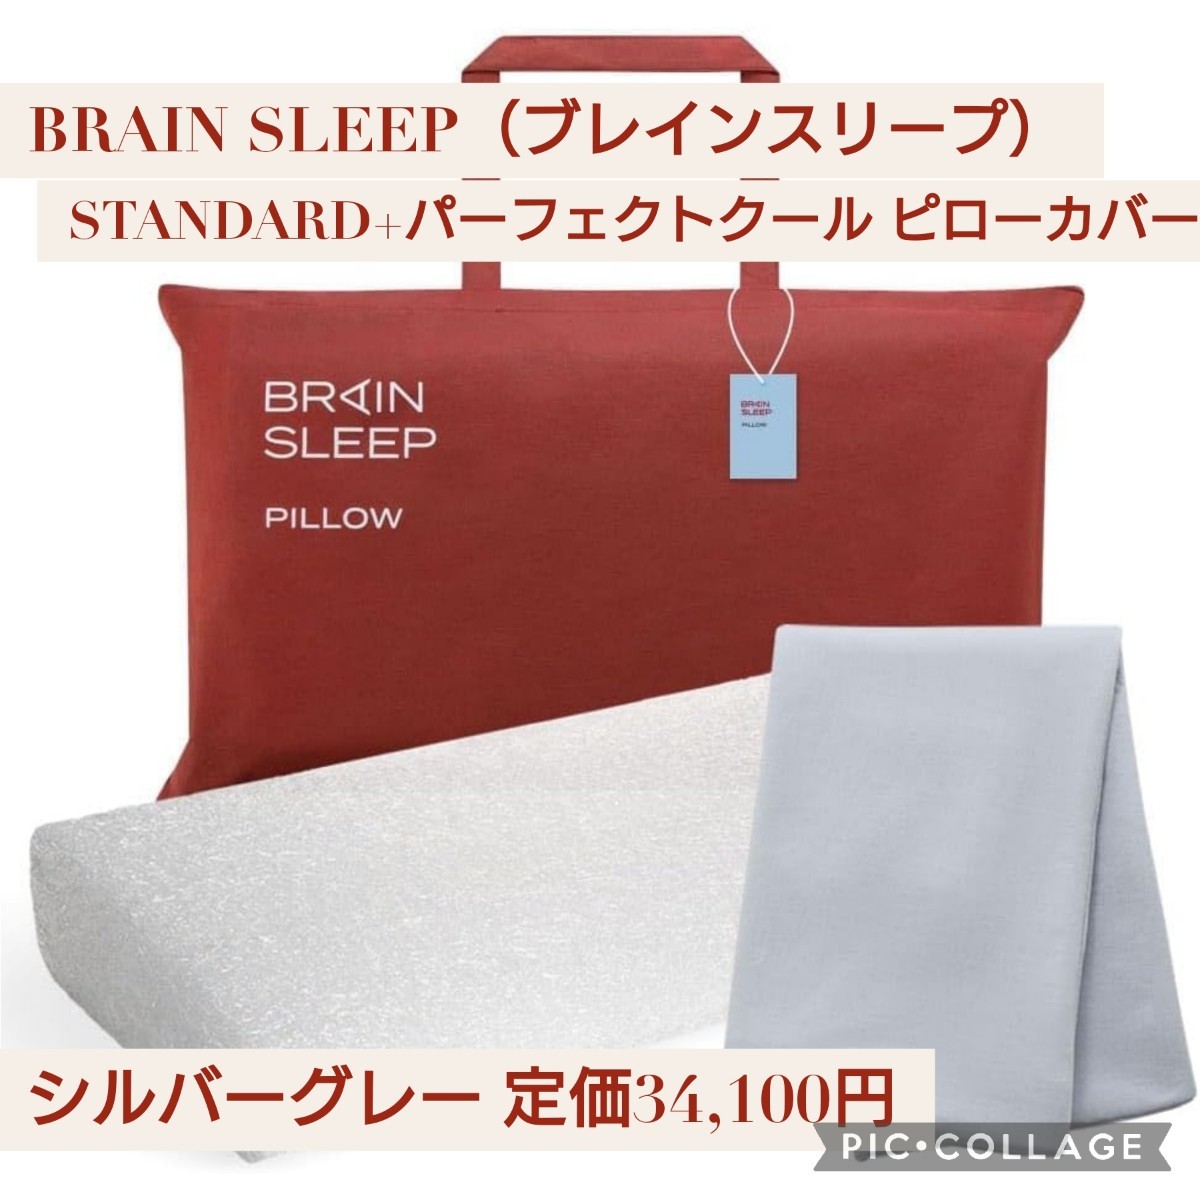 新品 BRAIN SLEEP ブレインスリープ ピロー (7グラデーション